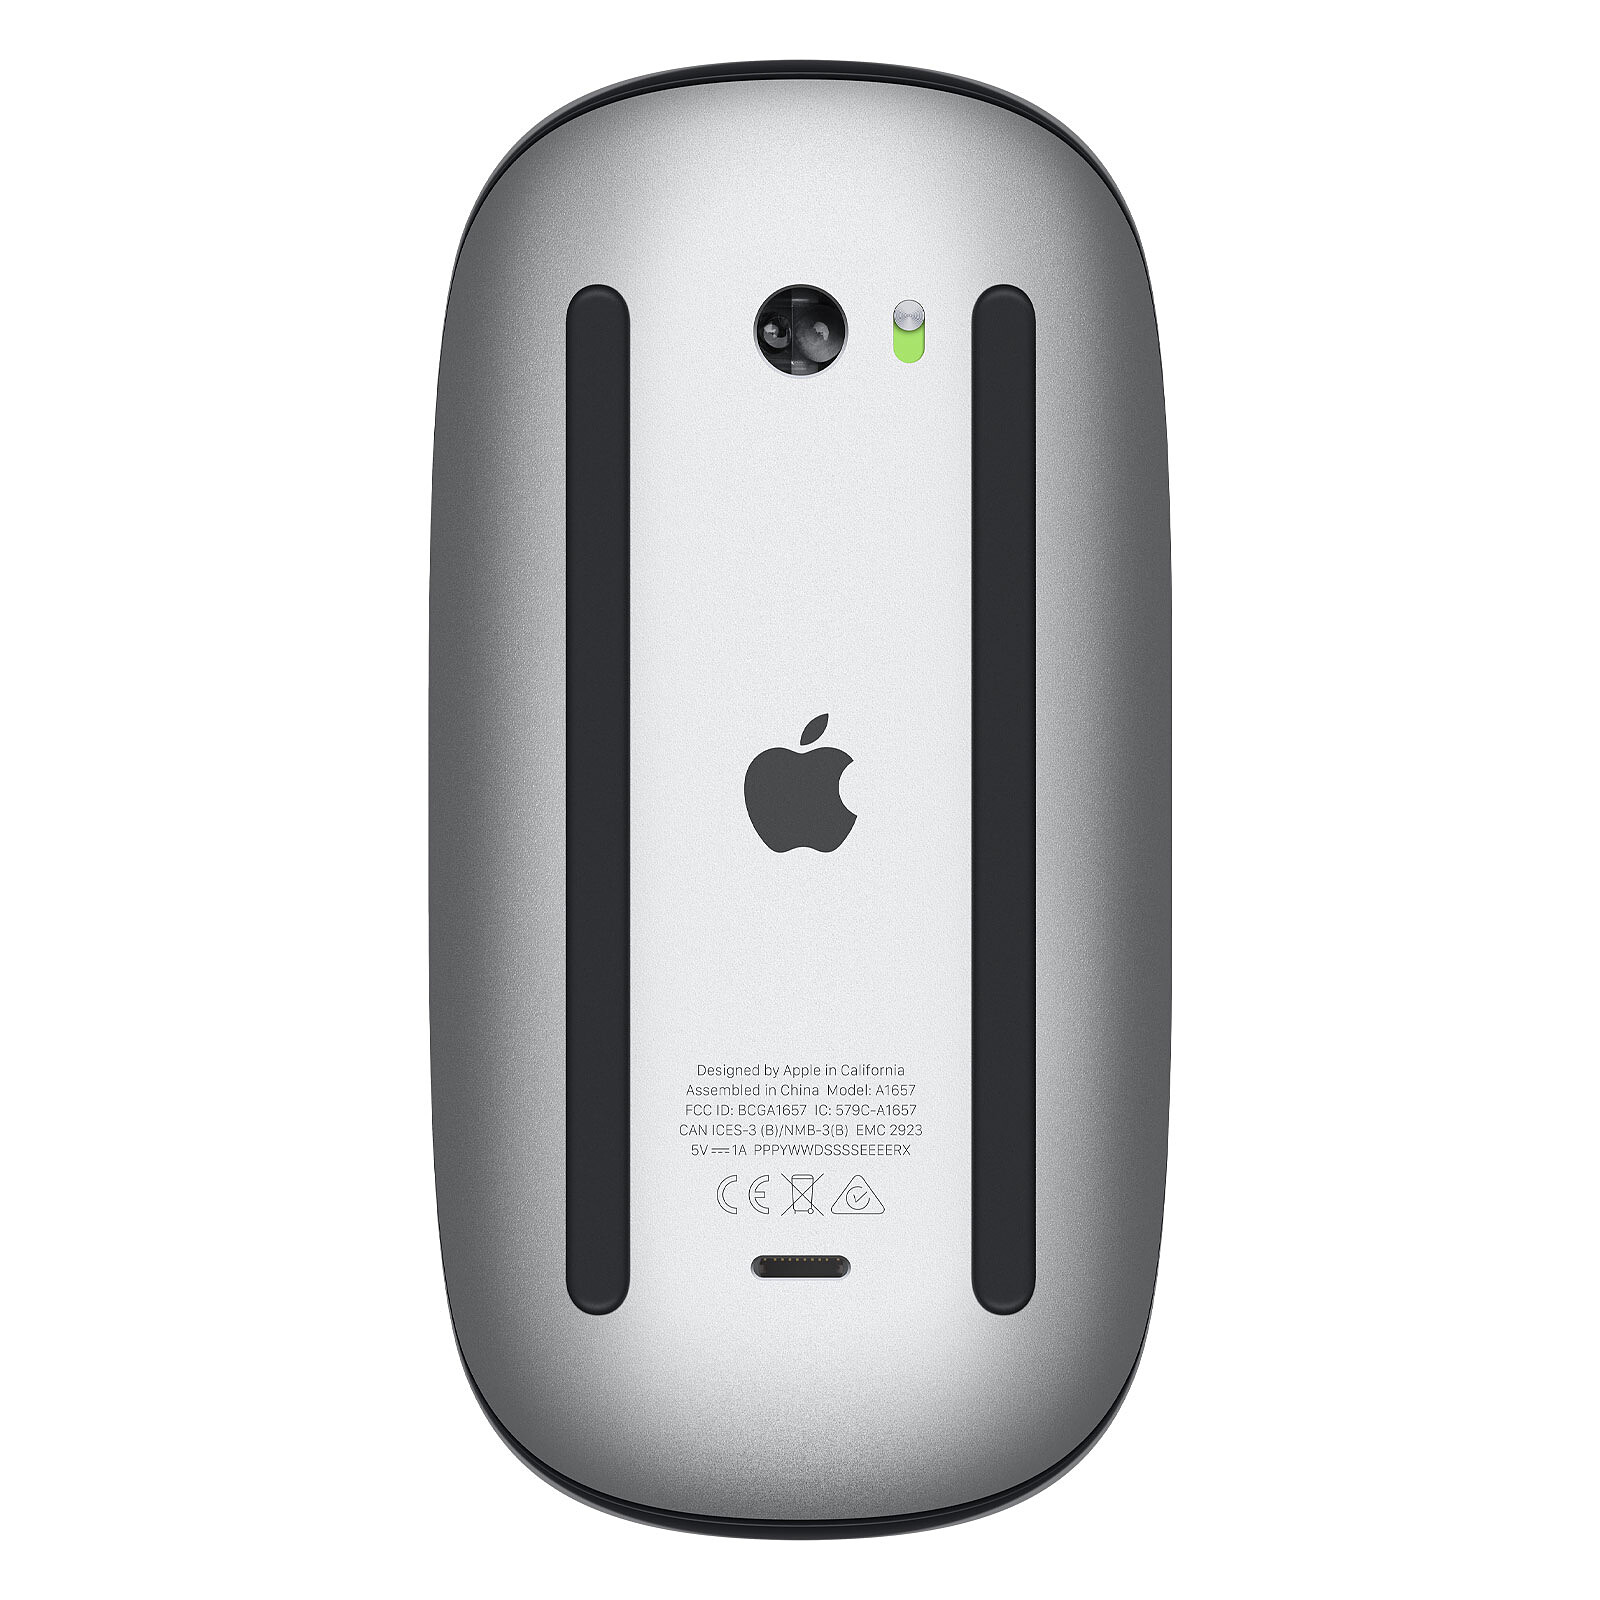 Souris Bluetooth pour Ipad, souris sans fil pour Macbook Air / mac